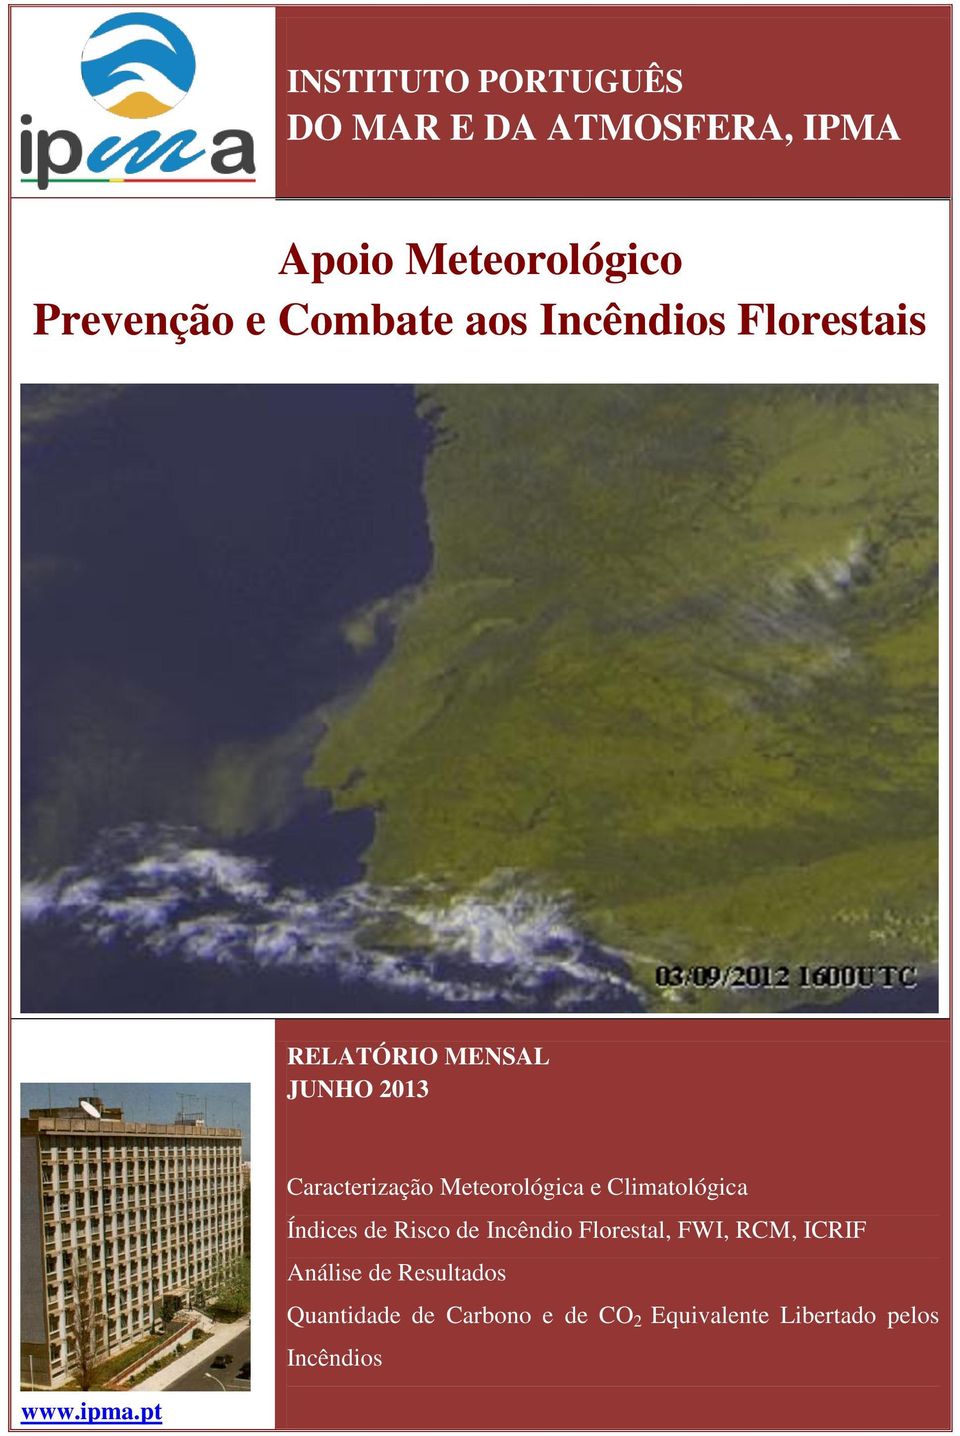 Meteorológica e Climatológica Índices de Risco de Incêndio Florestal, FWI, RCM, ICRIF